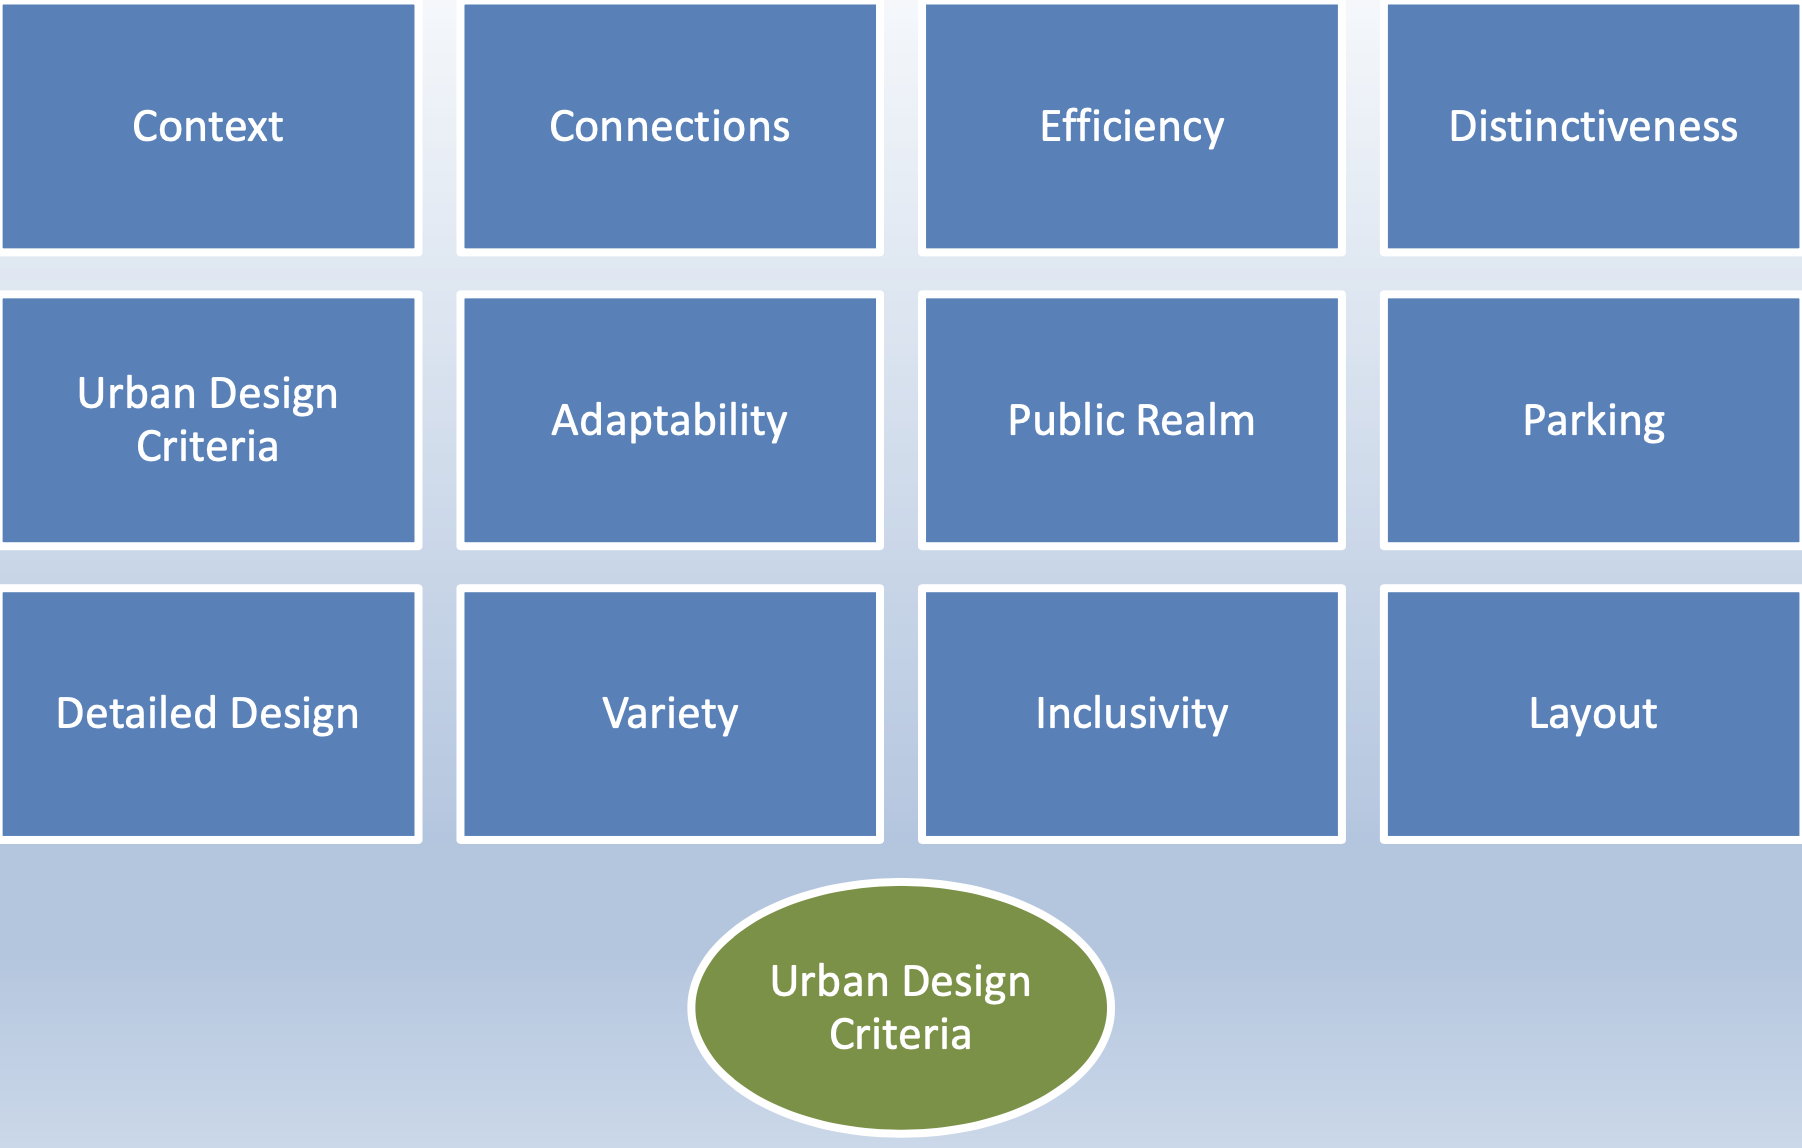 Figure 16.2 Urban design criteria